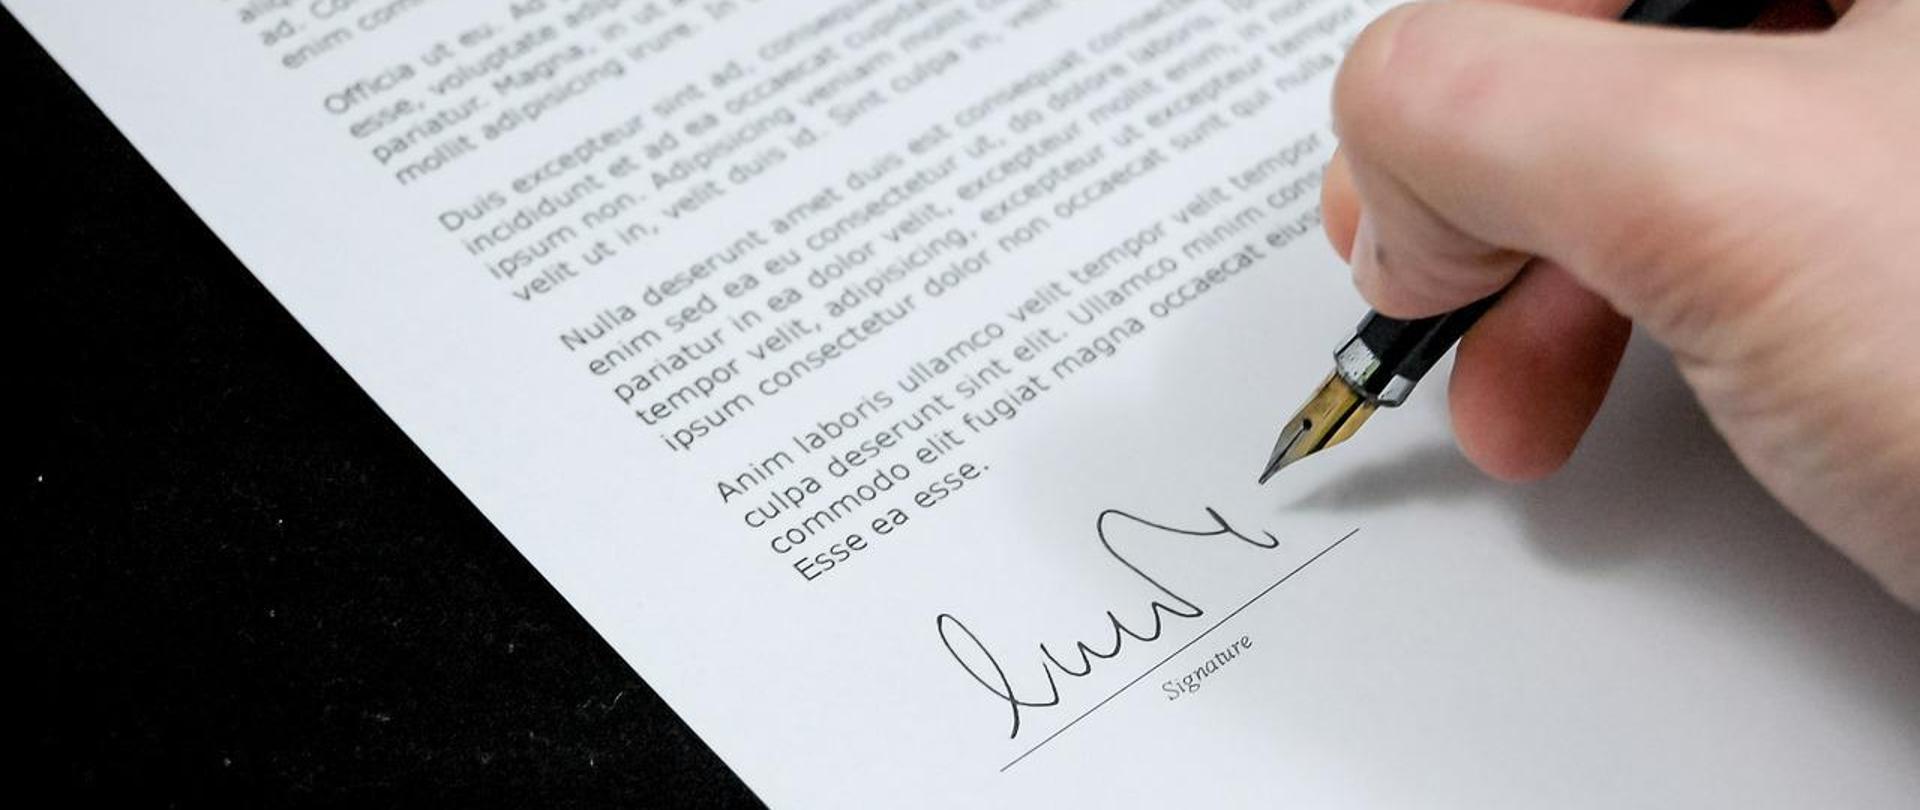 zdjęcie wycinka dokumentu w trakcie podpisywania piórem